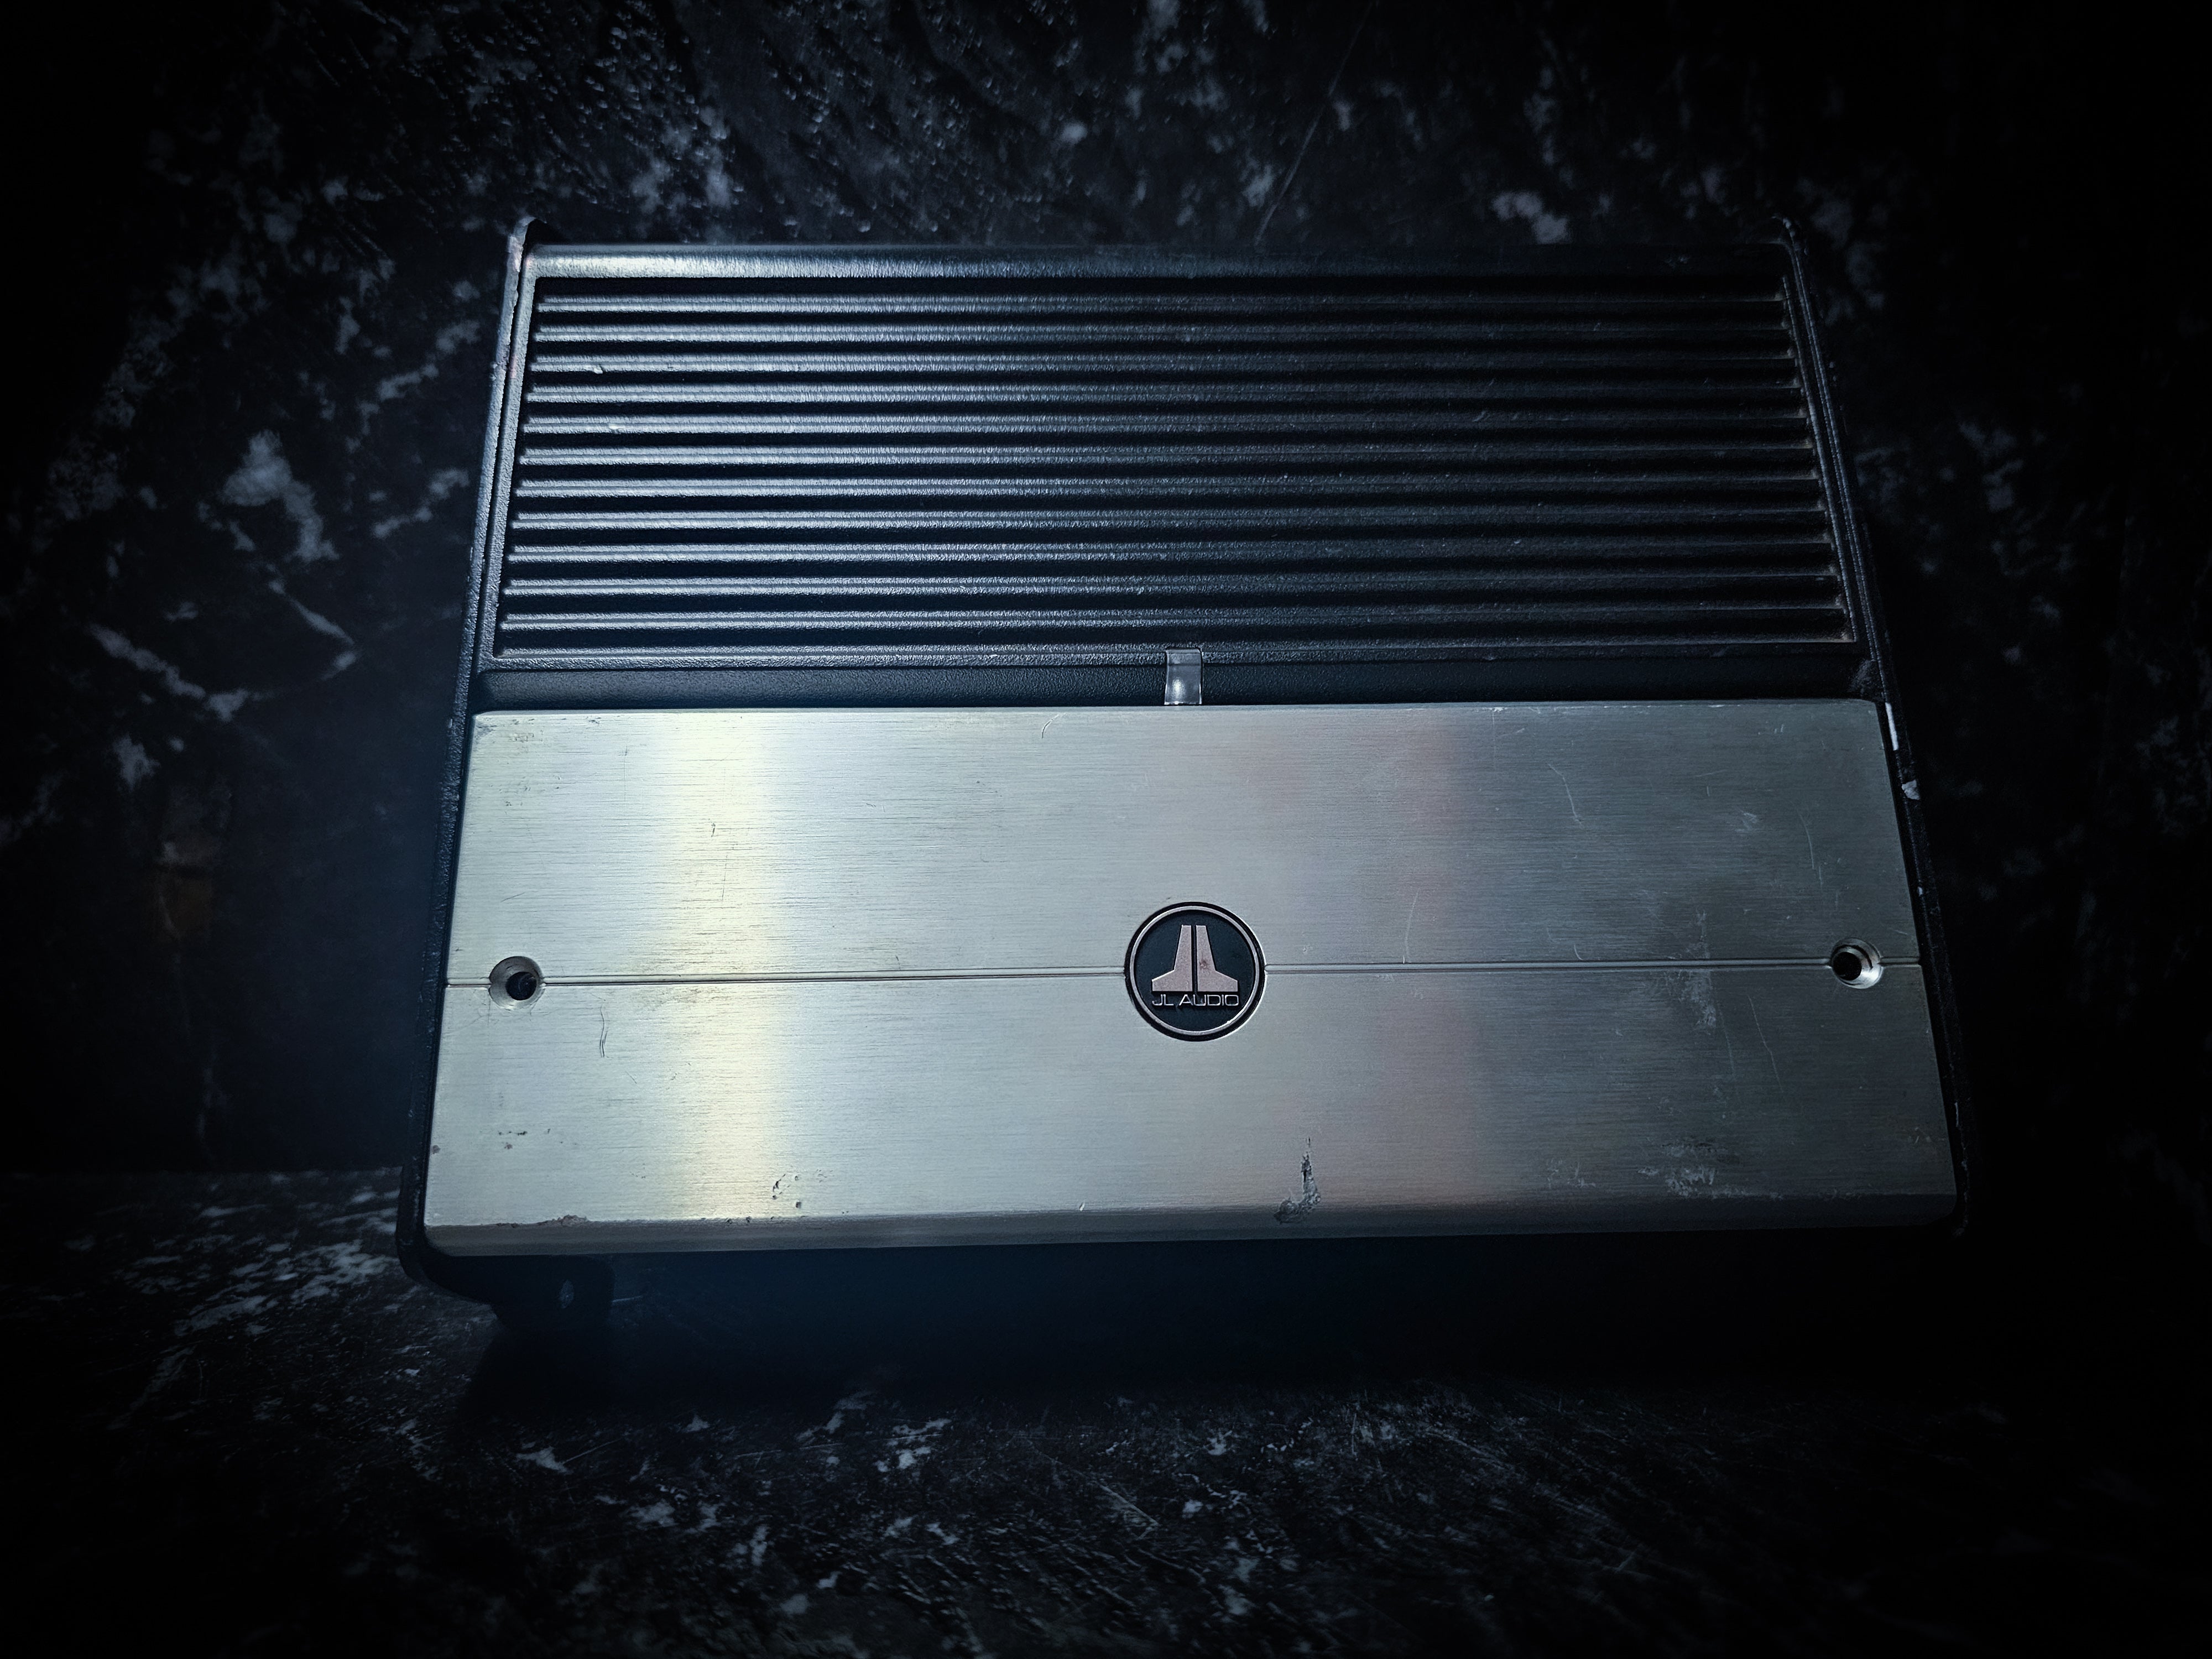 JL Audio 600watt Rms Monoblock Compact Amplifier